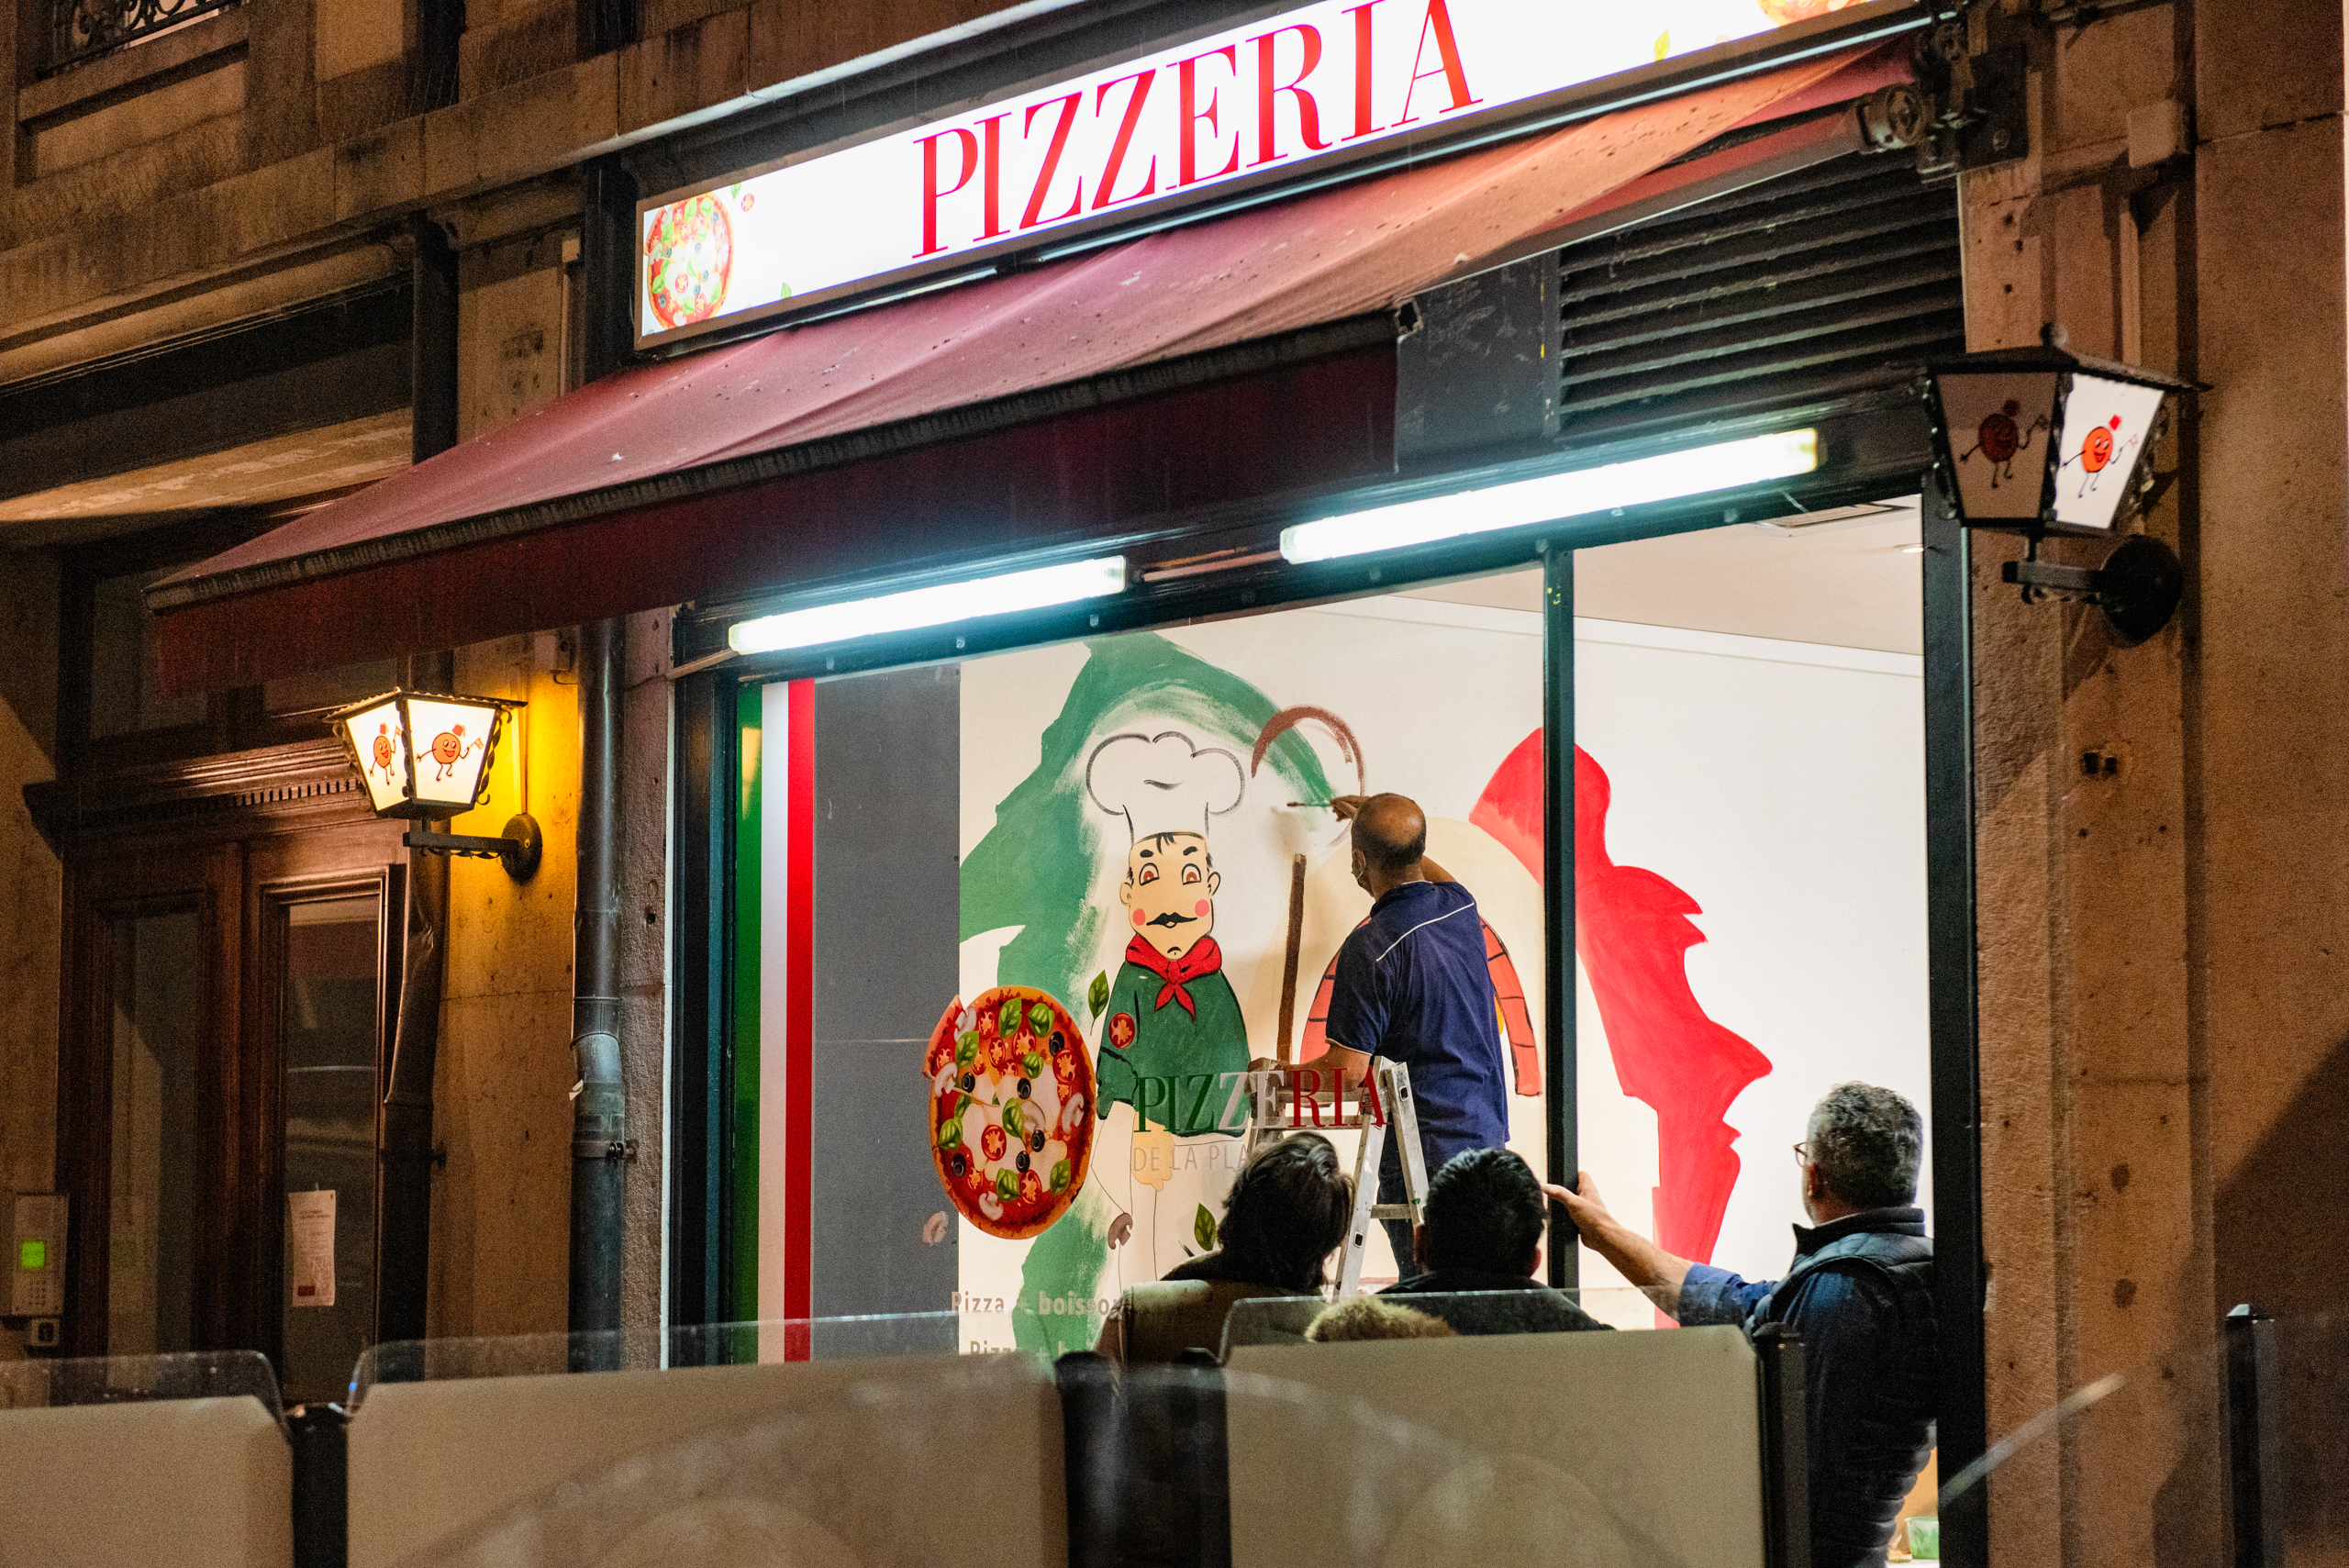 Zeitvertreib: Pizzeria streichen